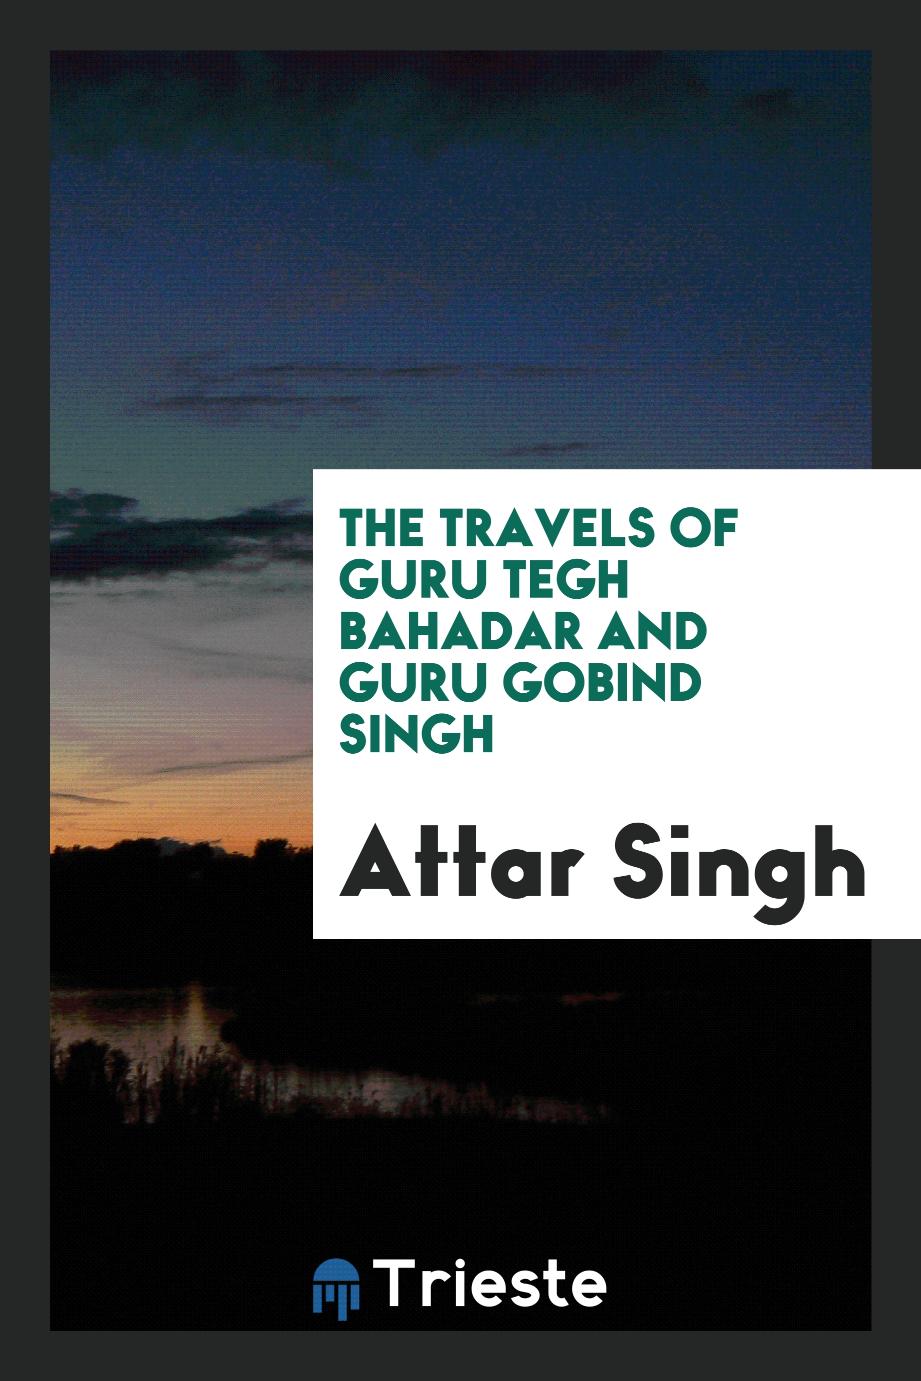 The Travels of Guru Tegh Bahadar and Guru Gobind Singh